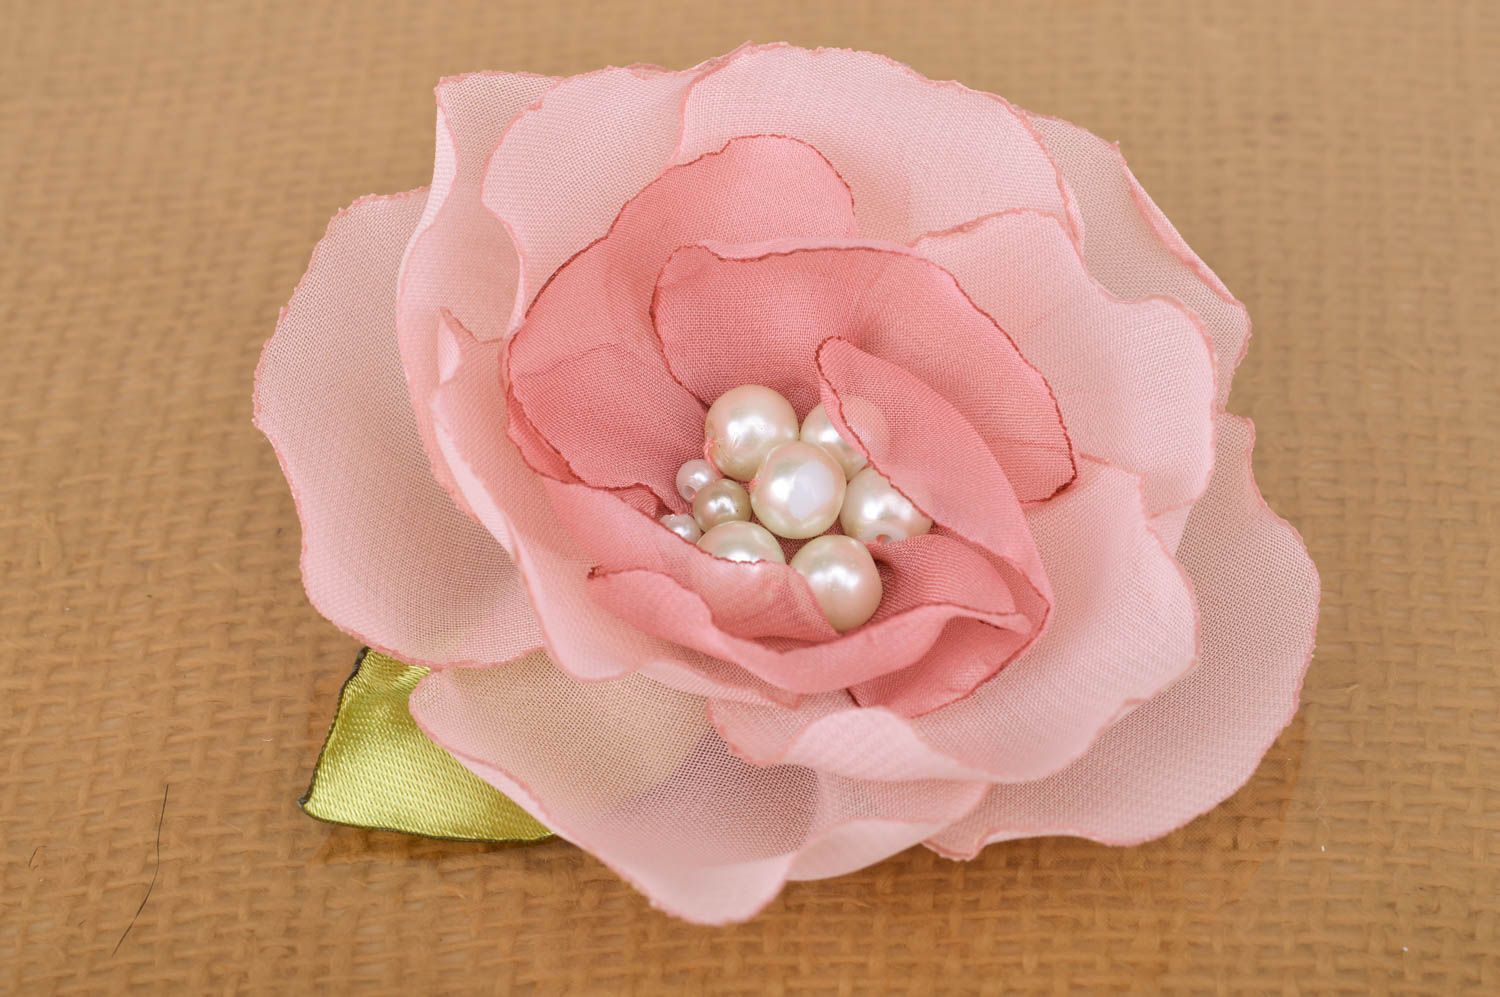 Брошь-заколка из ткани в виде розовой розы красивая ручной работы с бусинами фото 2